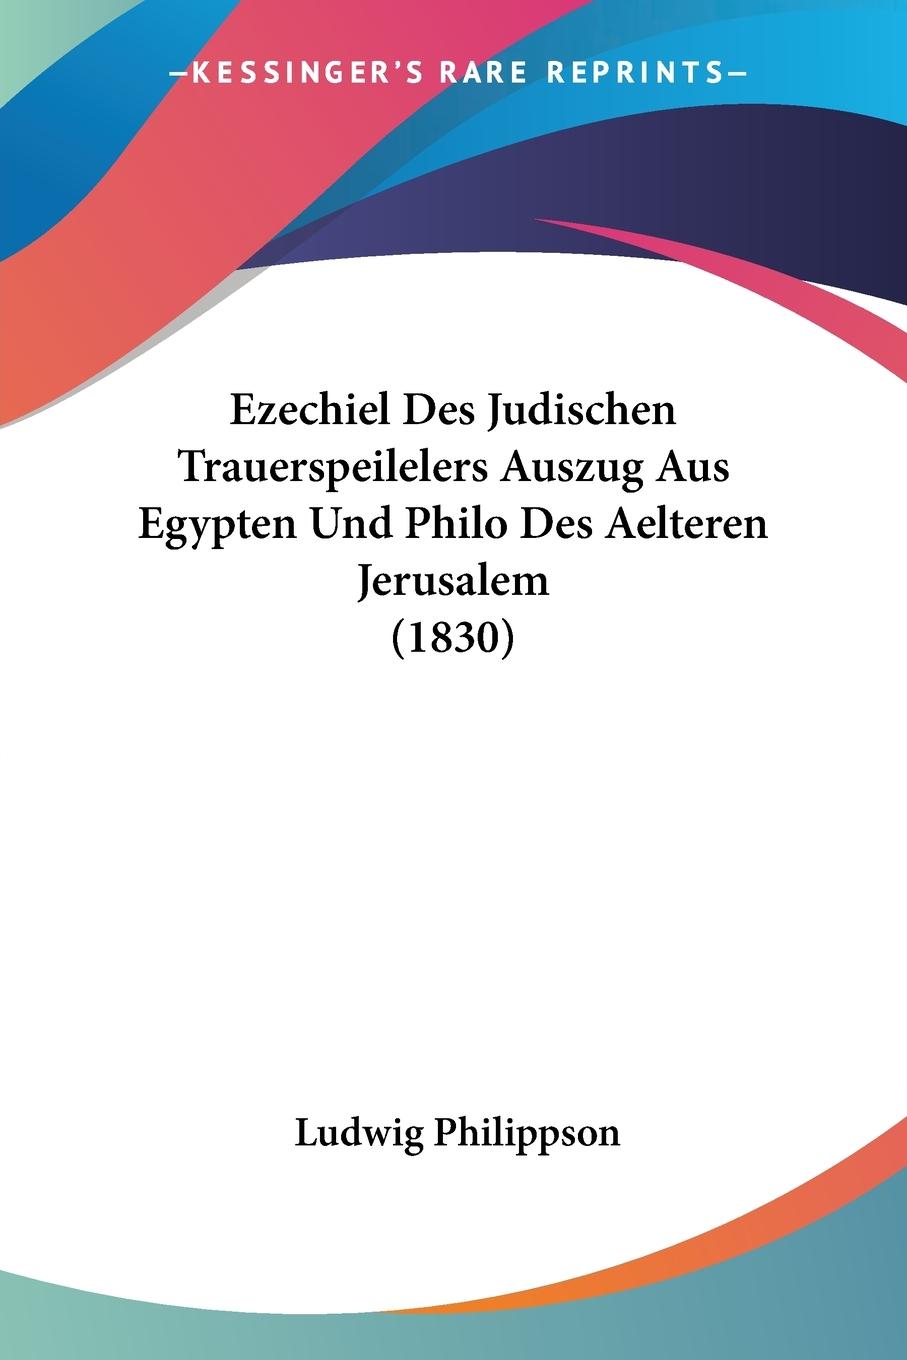 Ezechiel Des Judischen Trauerspeilelers Auszug Aus Egypten Und Philo Des Aelteren Jerusalem (1830) - Philippson, Ludwig